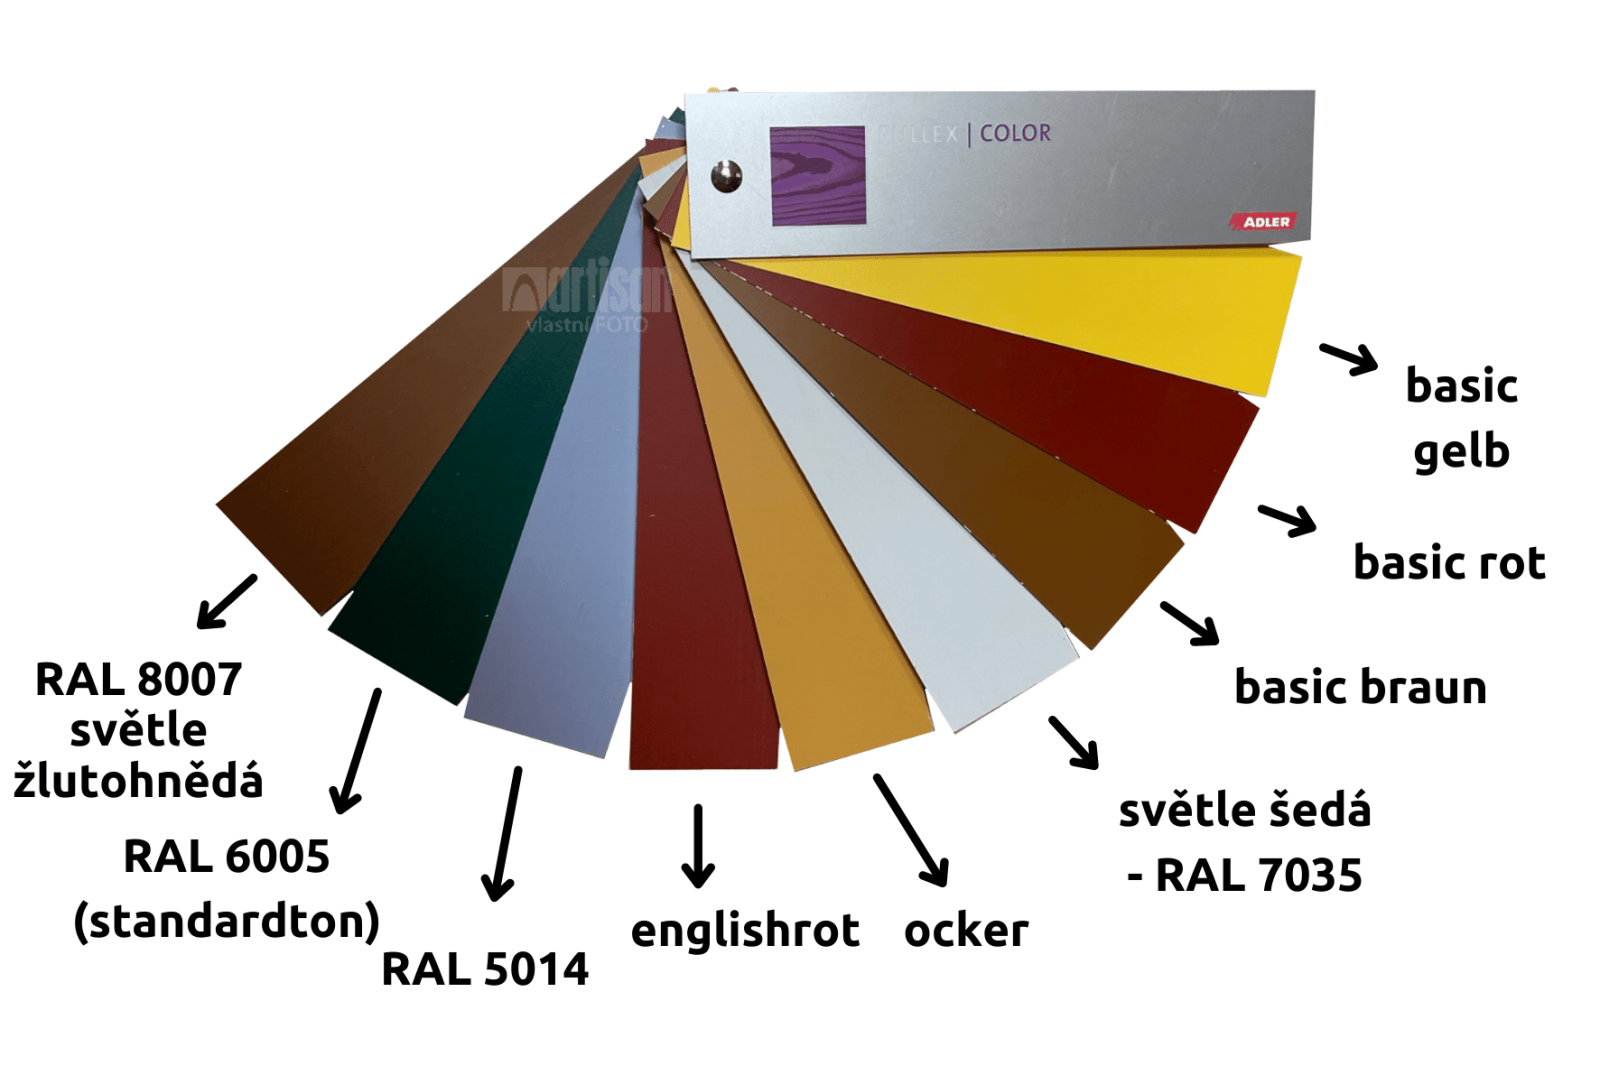 vzorník ADLER Pullex Color pro snadnější rozhodování